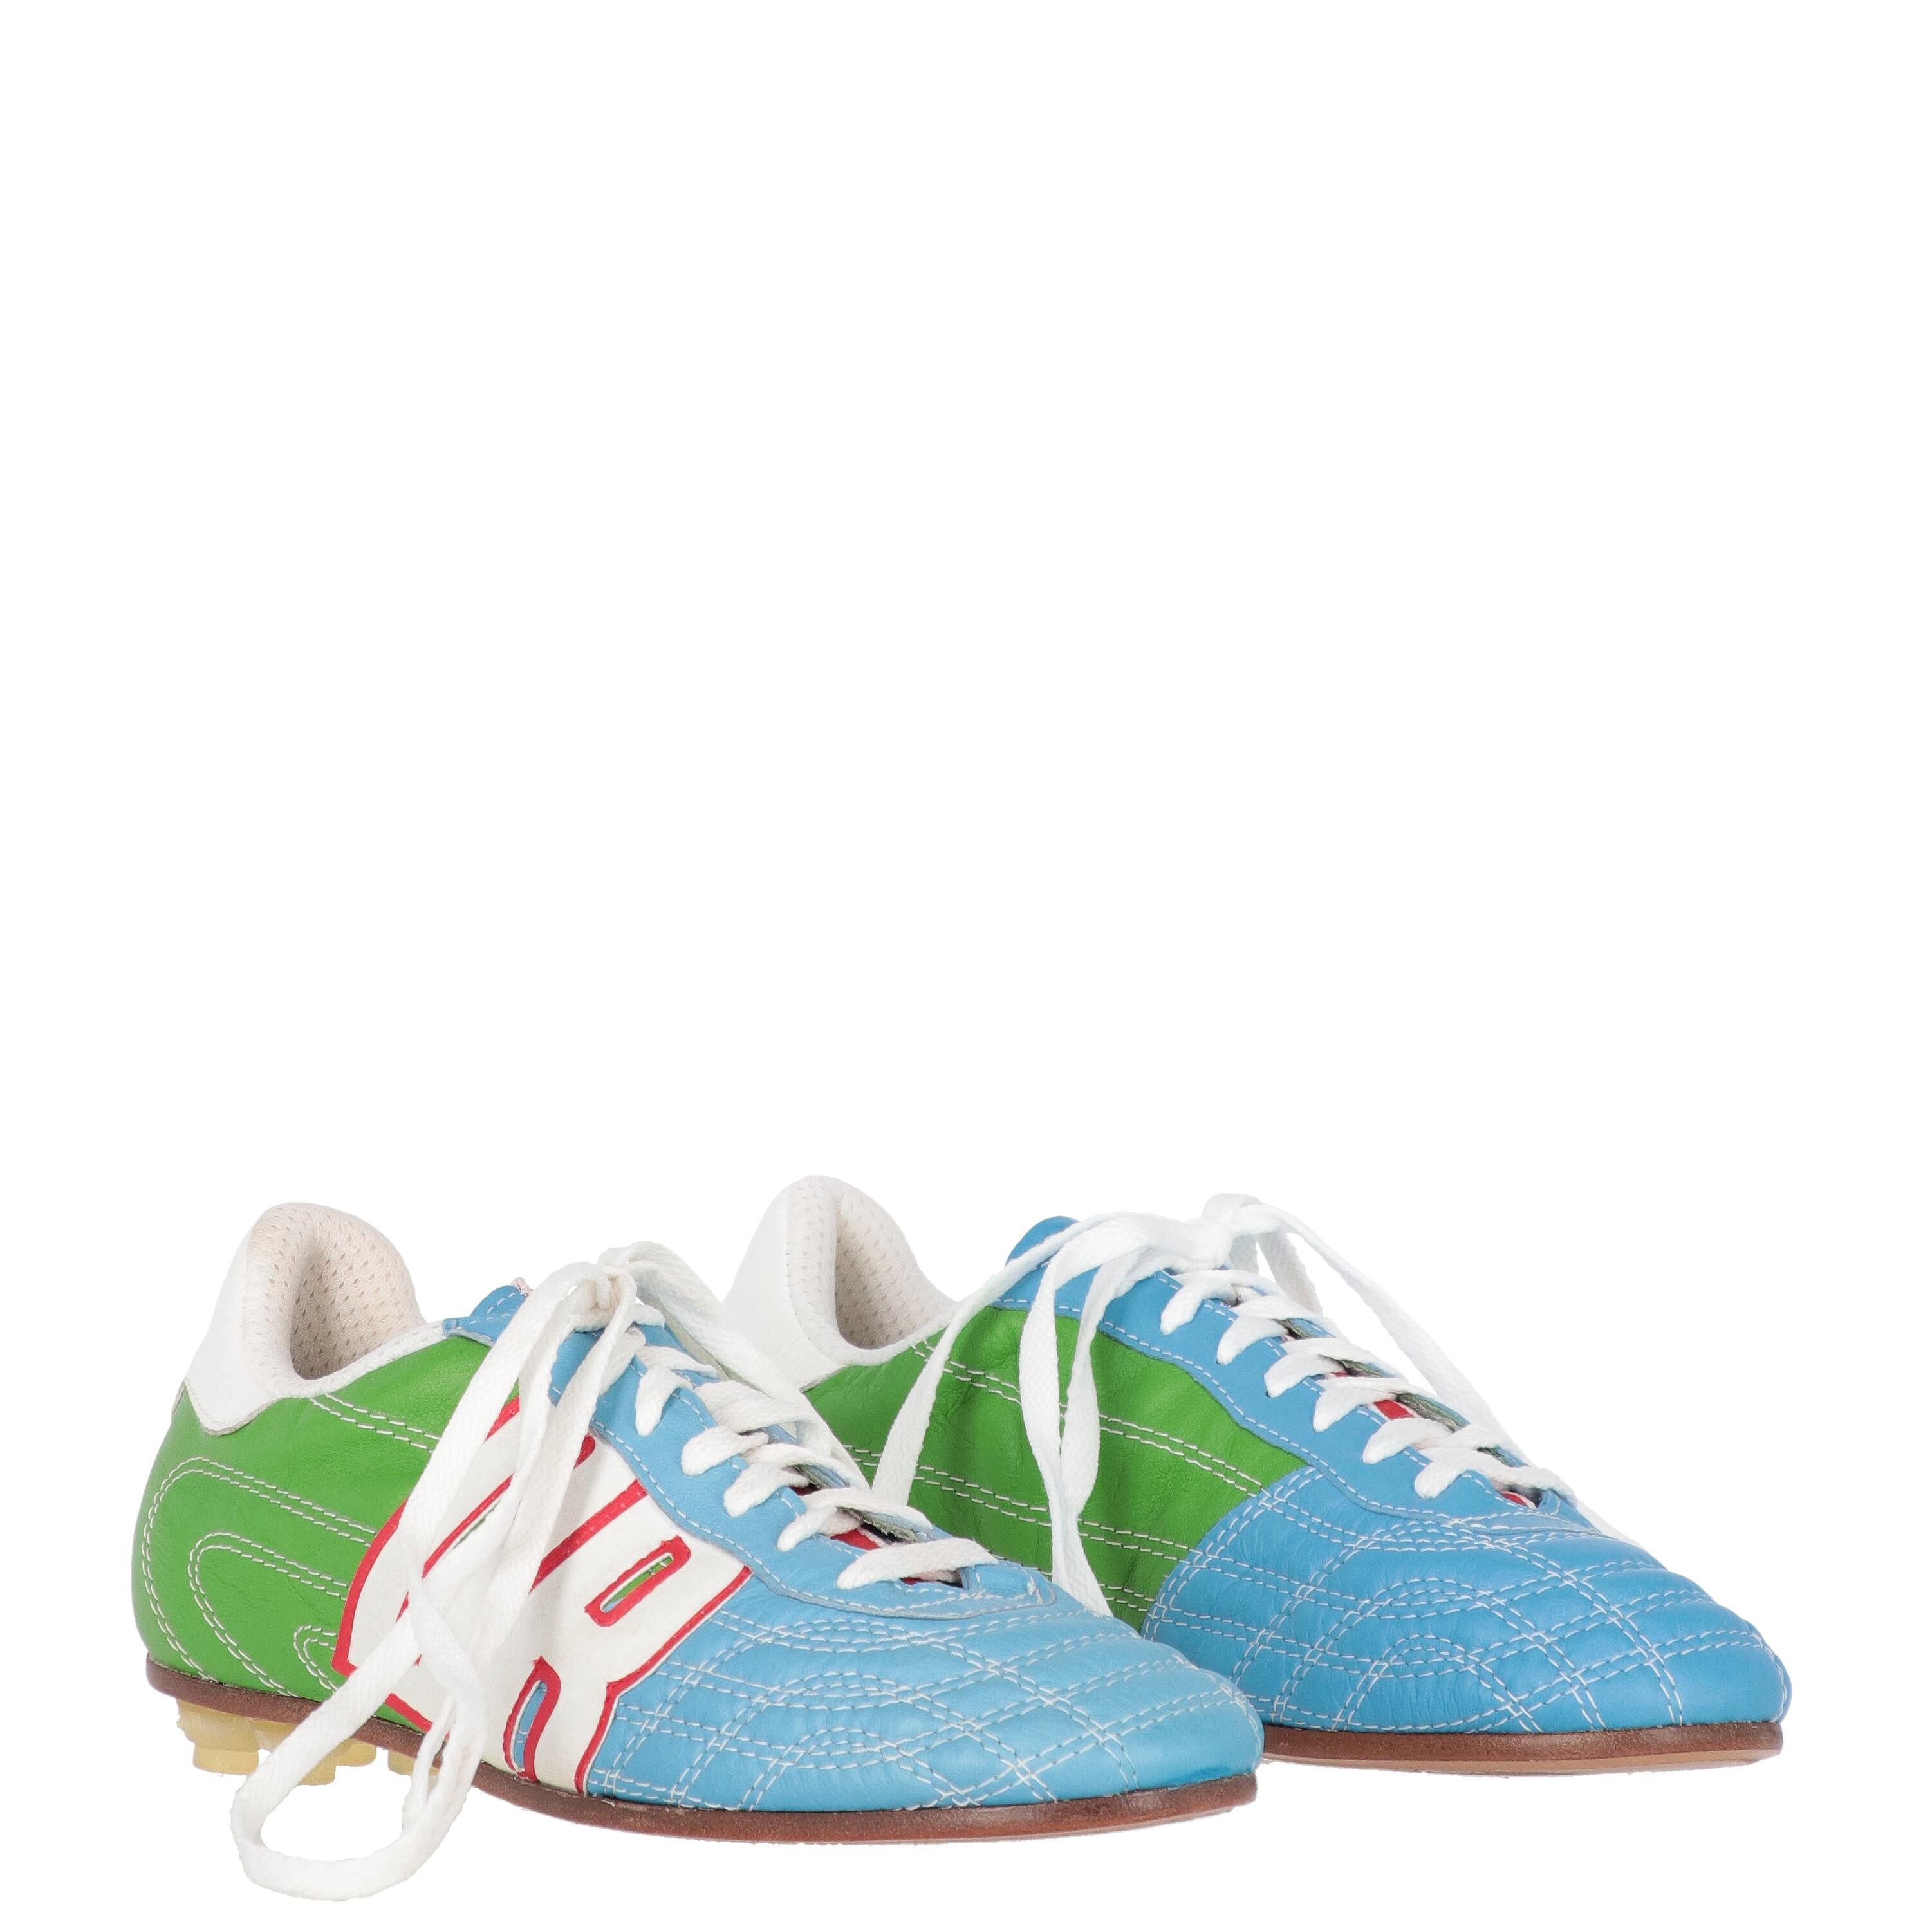 bikkembergs soccer shoes